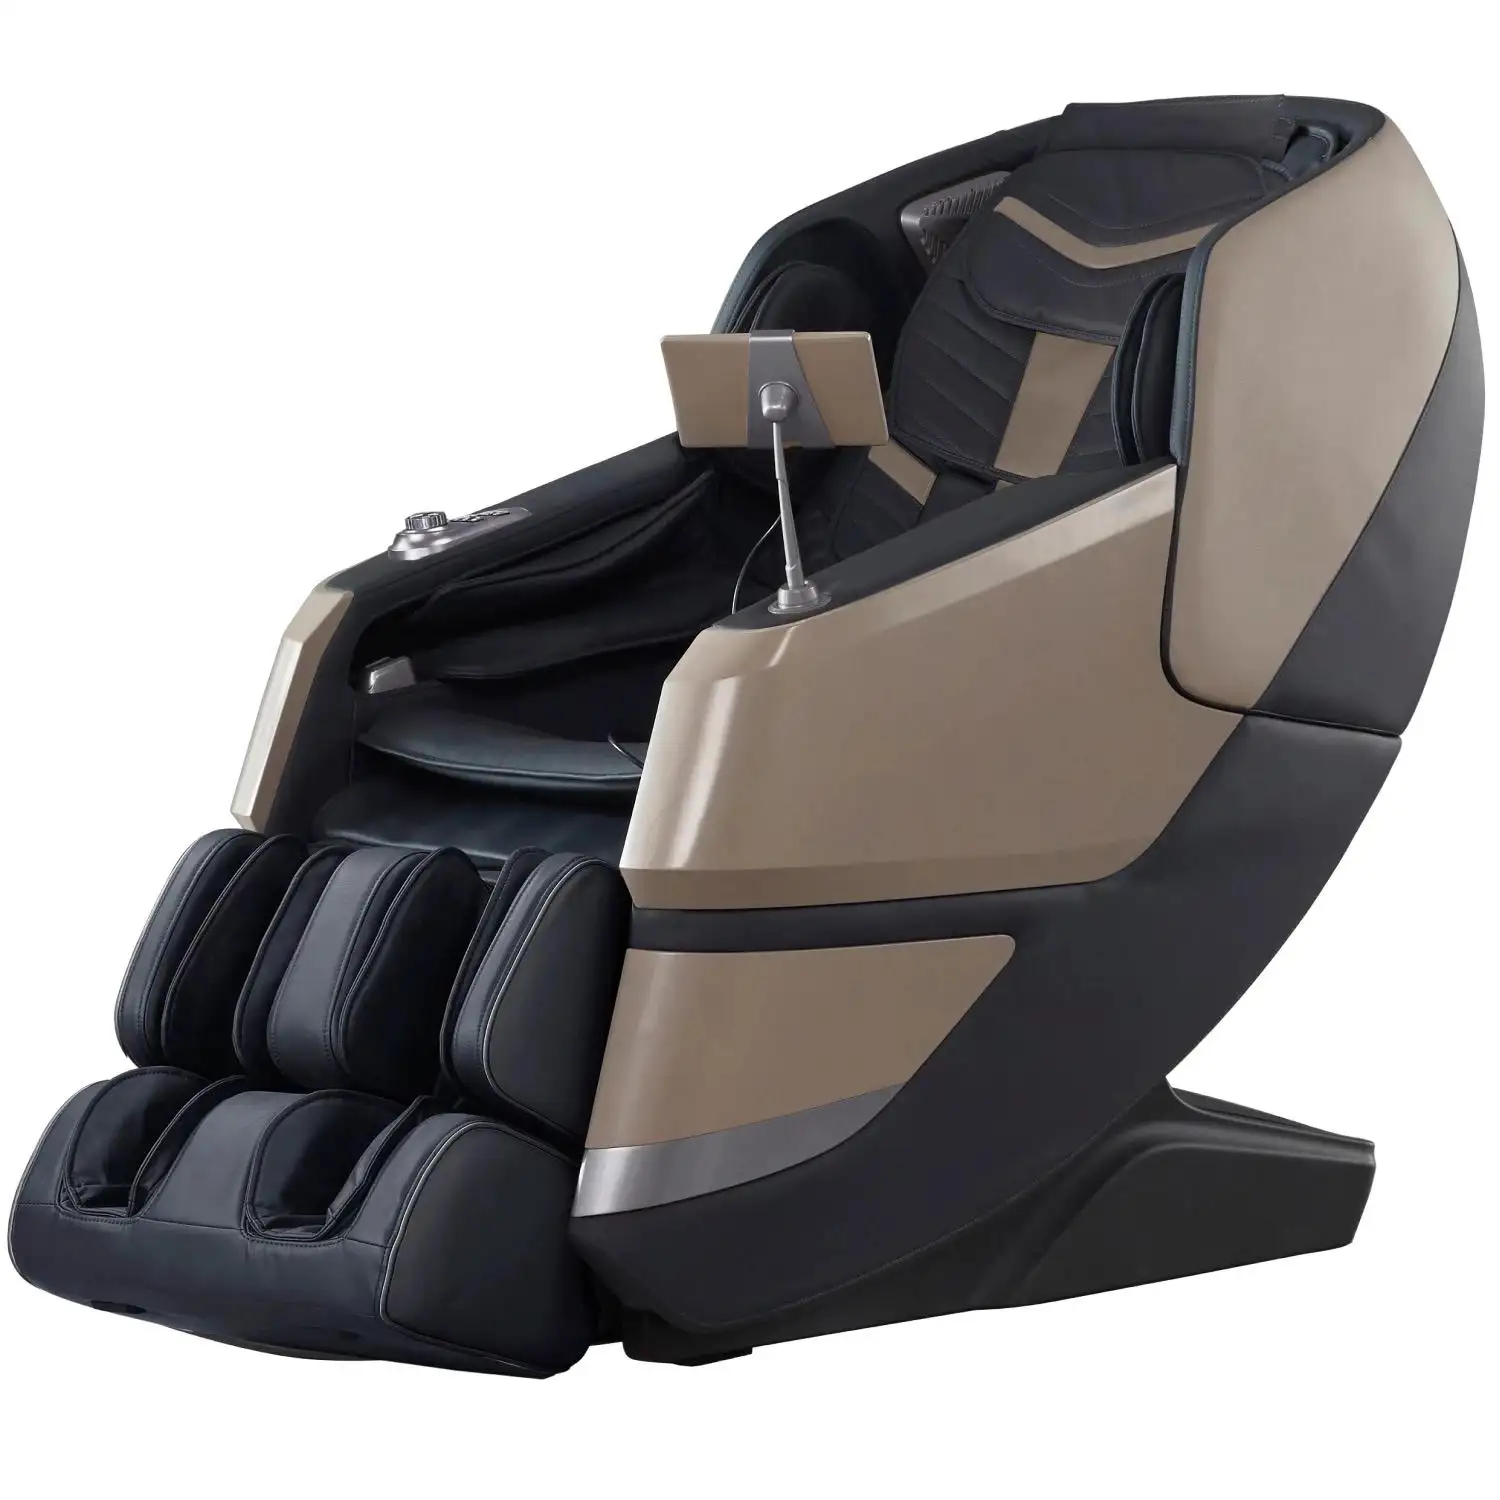 Fabrika 3D 4D lüks masaj koltukları 4d sıfır yerçekimi yüksek kalite ayak koltuk Shiatsu tüm vücut masaj aleti sandalye